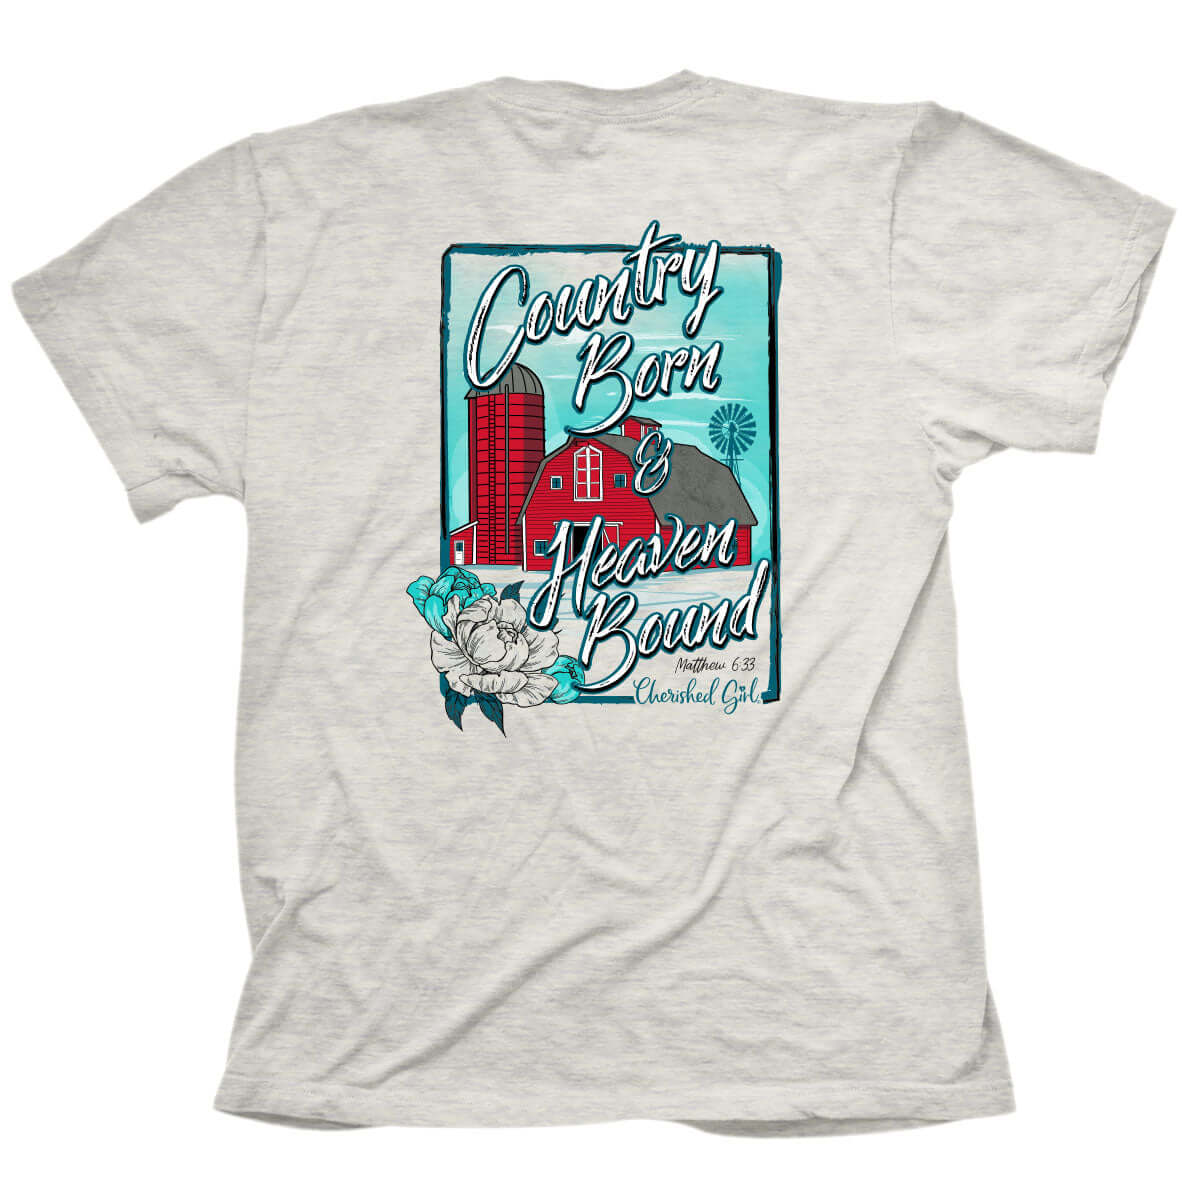 Cherished Girl Womens T-Shirt Country Barn | 2FruitBearers